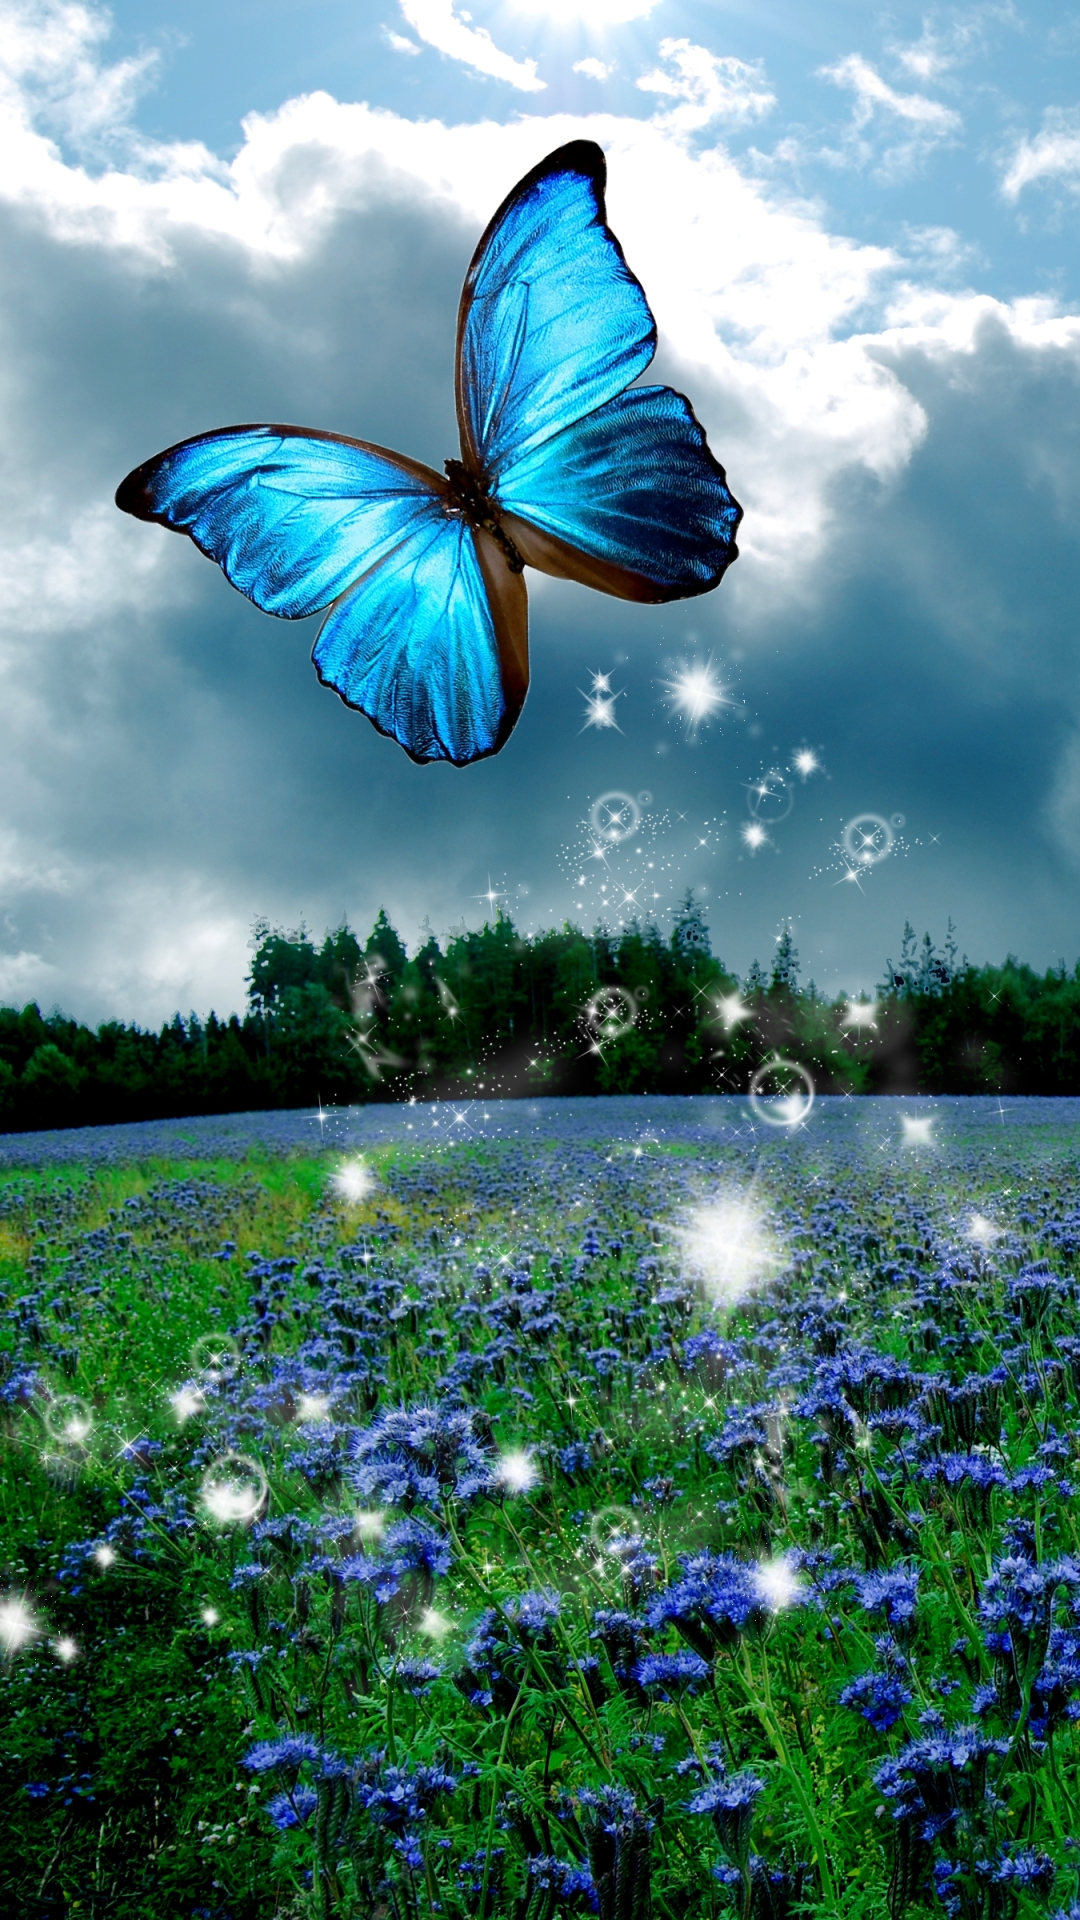 carta da parati mobile carta da parati mobile,la farfalla,blu,natura,paesaggio naturale,insetto